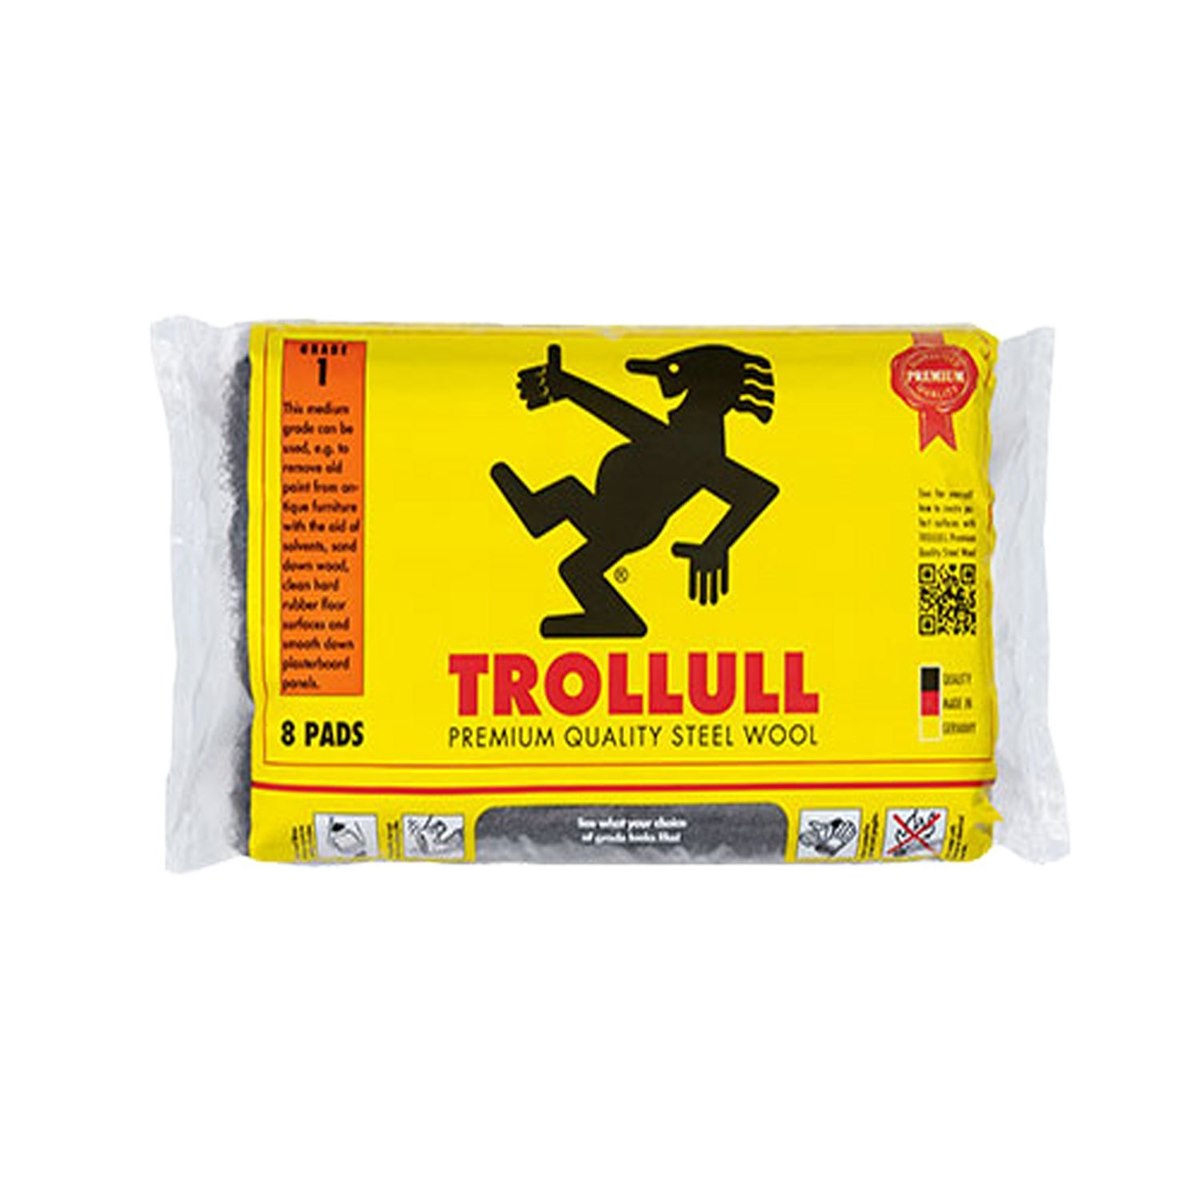 Trollull 8 Pads Steel Wool 1